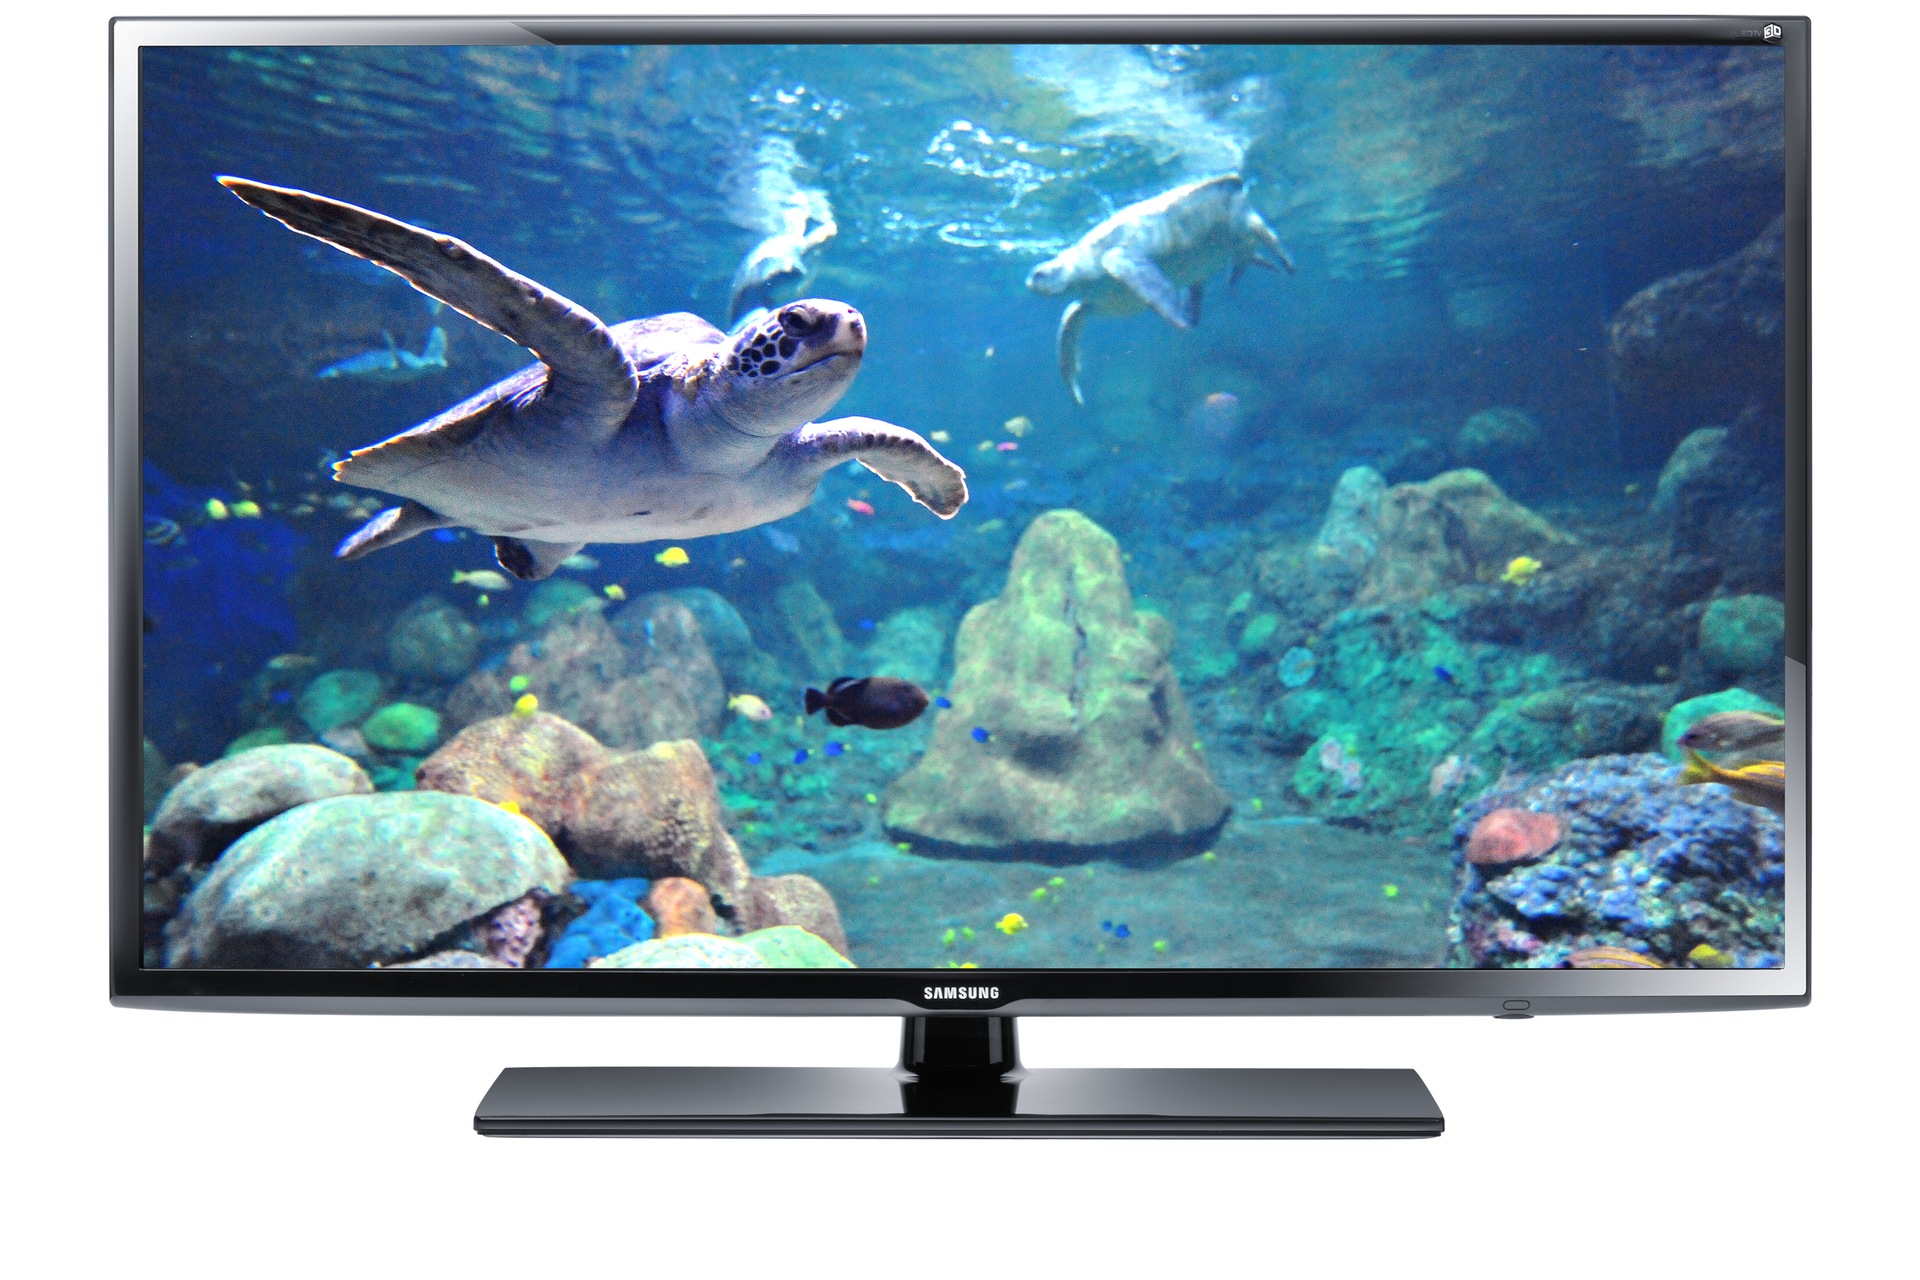 삼성 LED TV
UN32EH6030F
(80cm)
